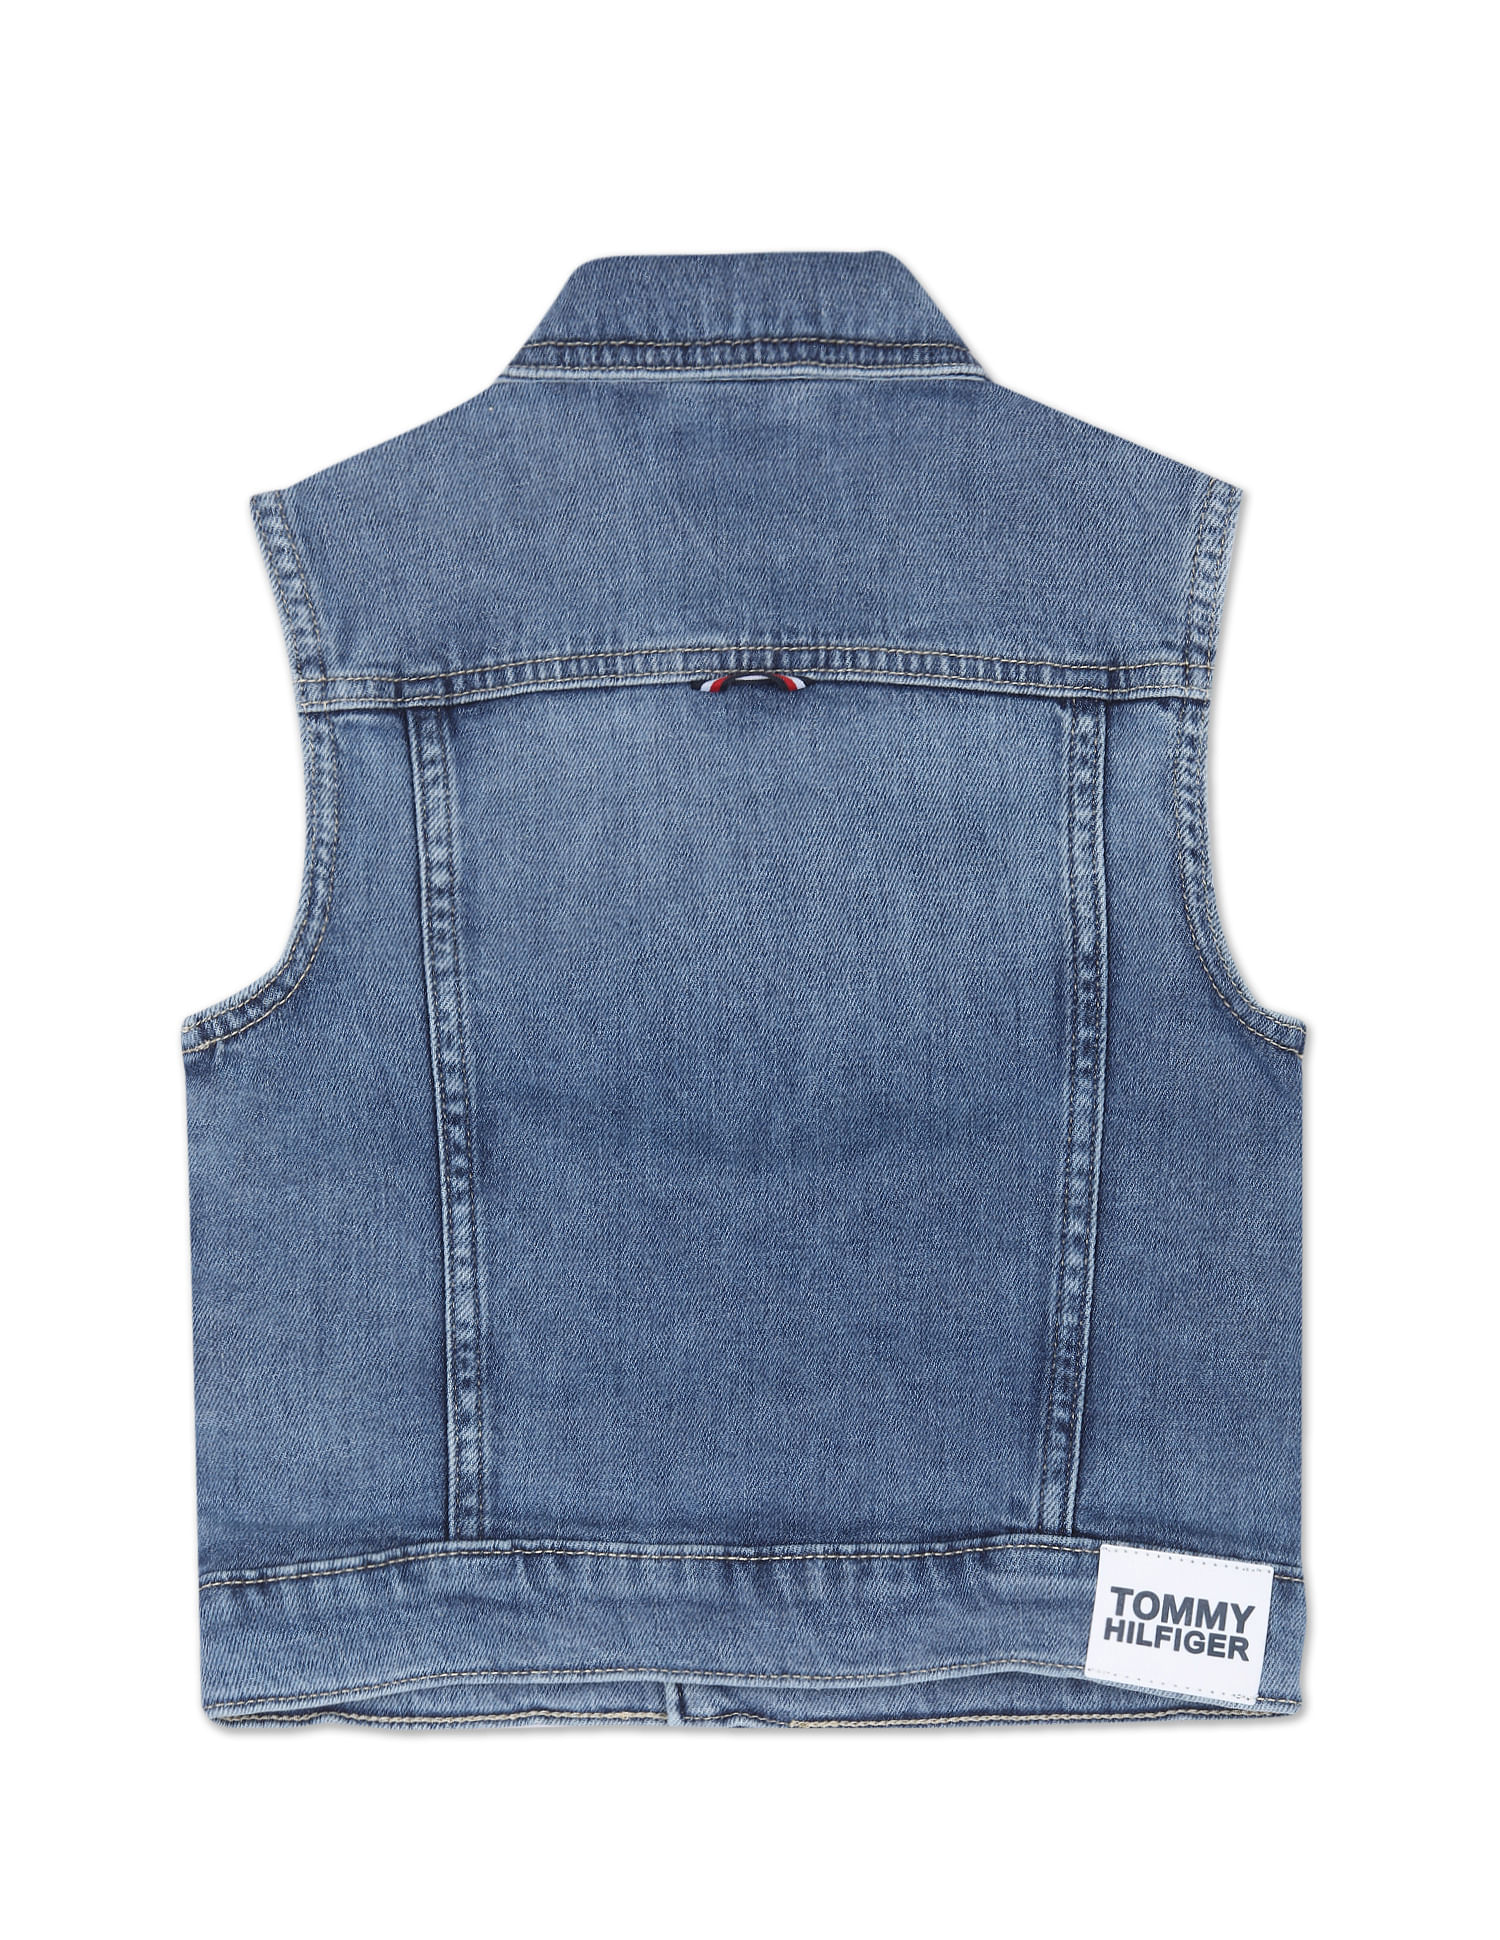 Givenchy Oversized Sleeveless Jacket In Denim - Indigo Blue | Editorialist